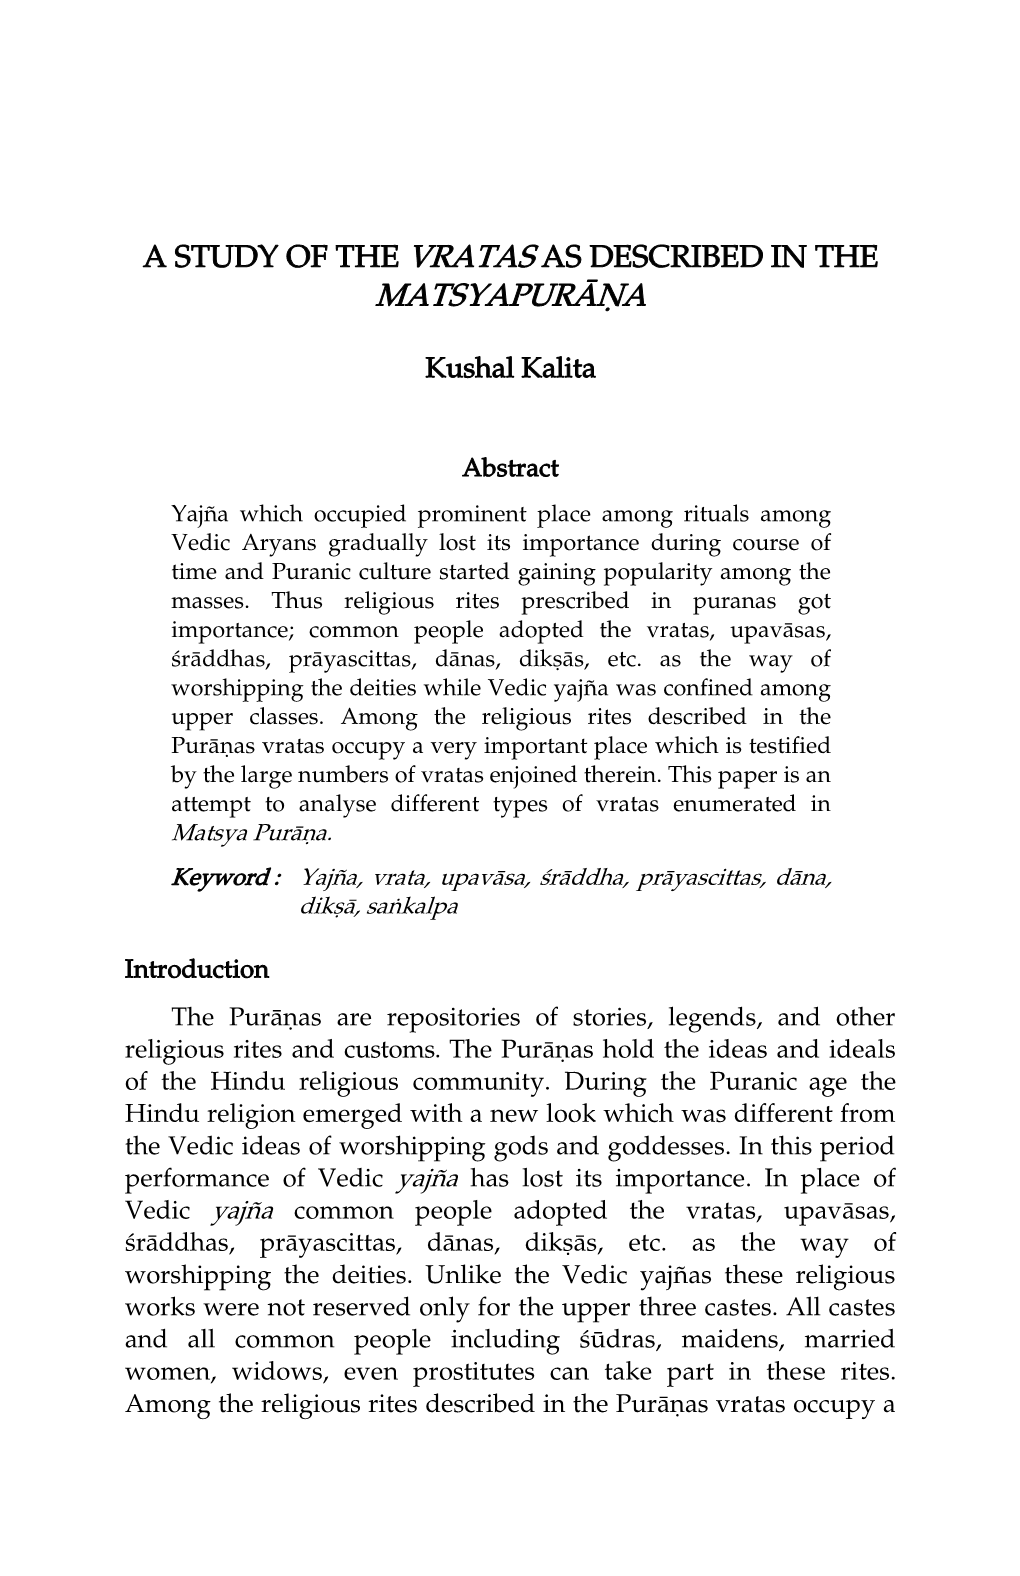 A Study of the Vratas As Described in the Matsyapurāṇa